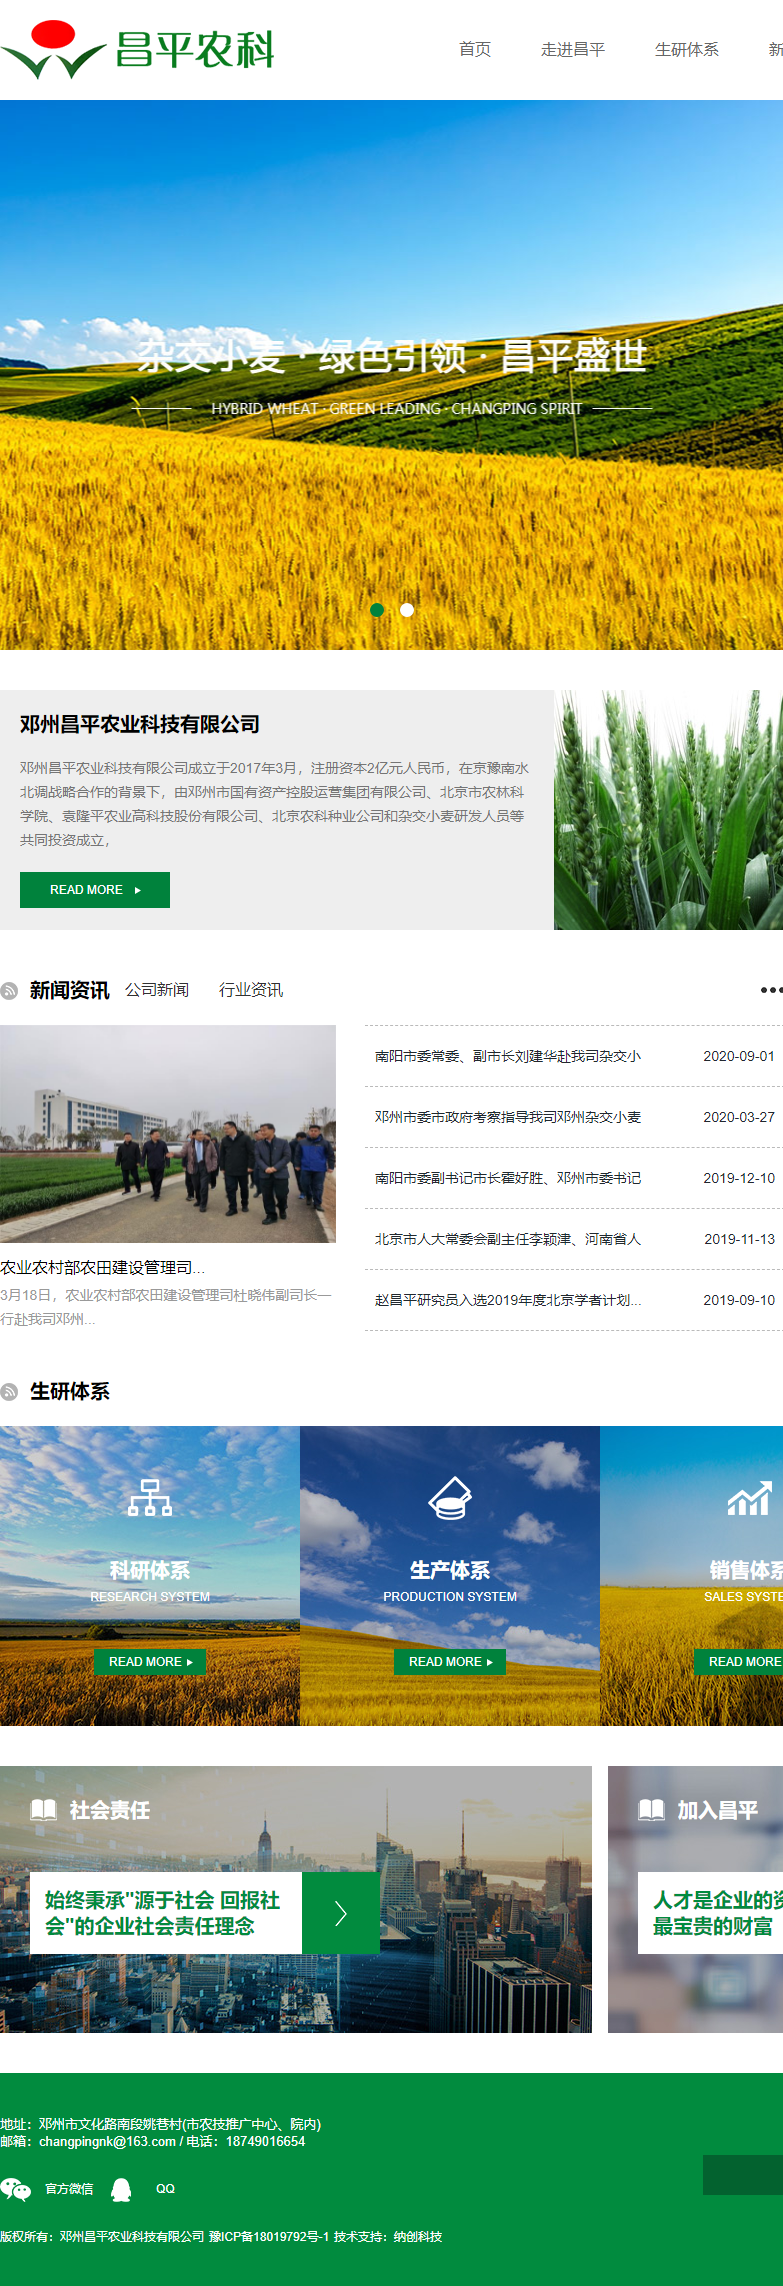 邓州昌平农业科技有限公司网站案例